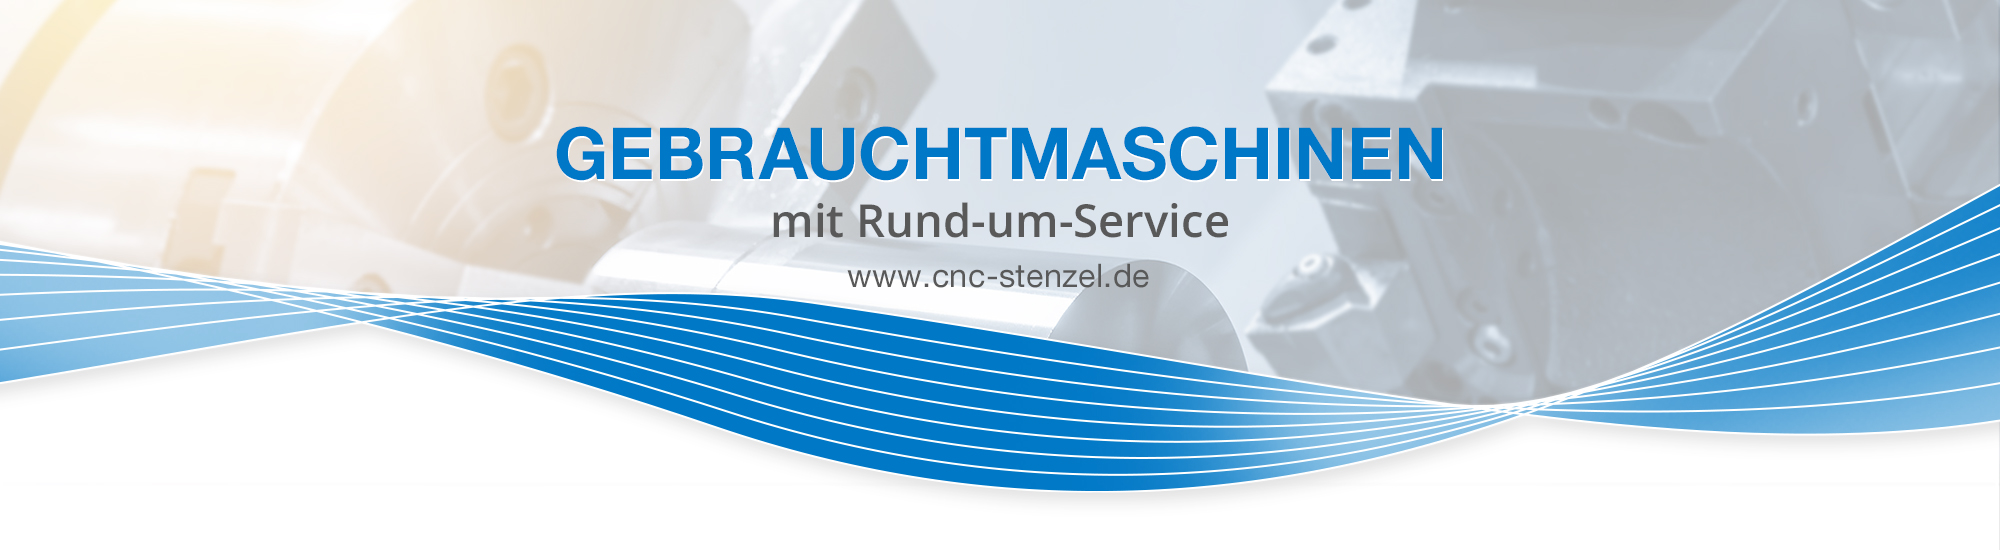 Stenzel GmbH - Maschinen und Ideen CNC Gebrauchtmaschinen